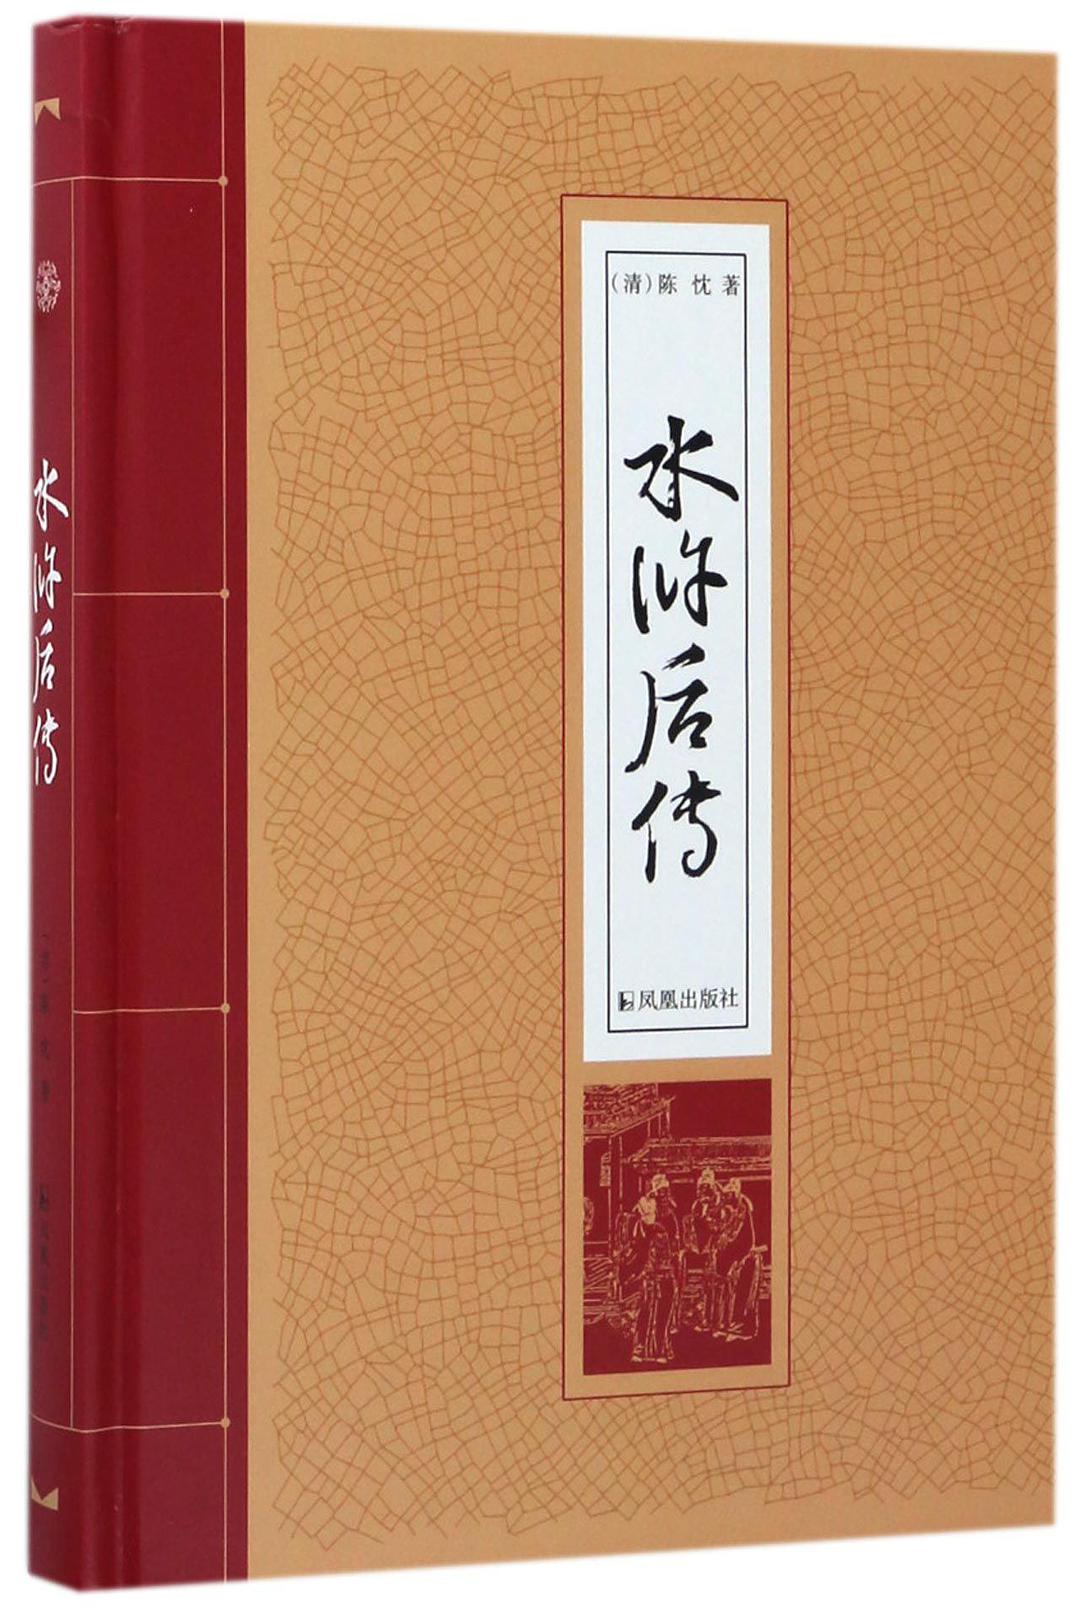 水滸後傳(2017年鳳凰出版社出版書籍)